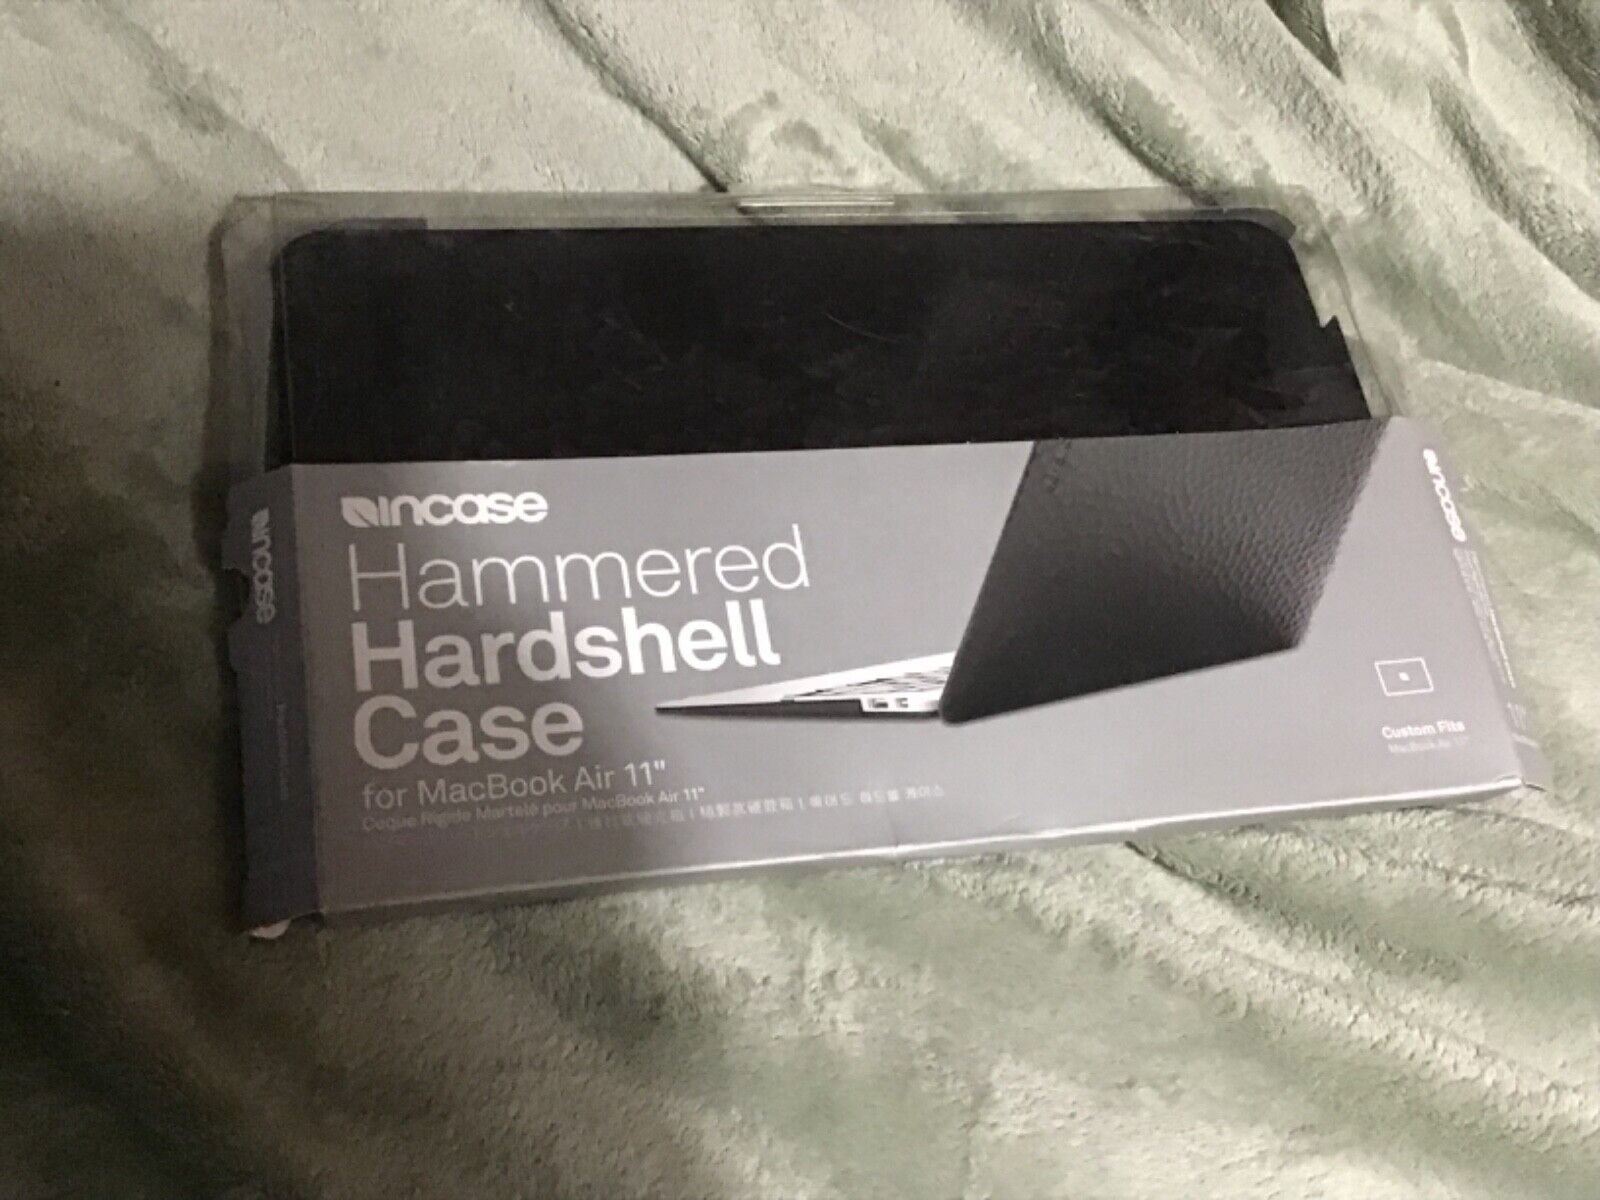 incase hammered hardshell case for mackbook air 11' new blk